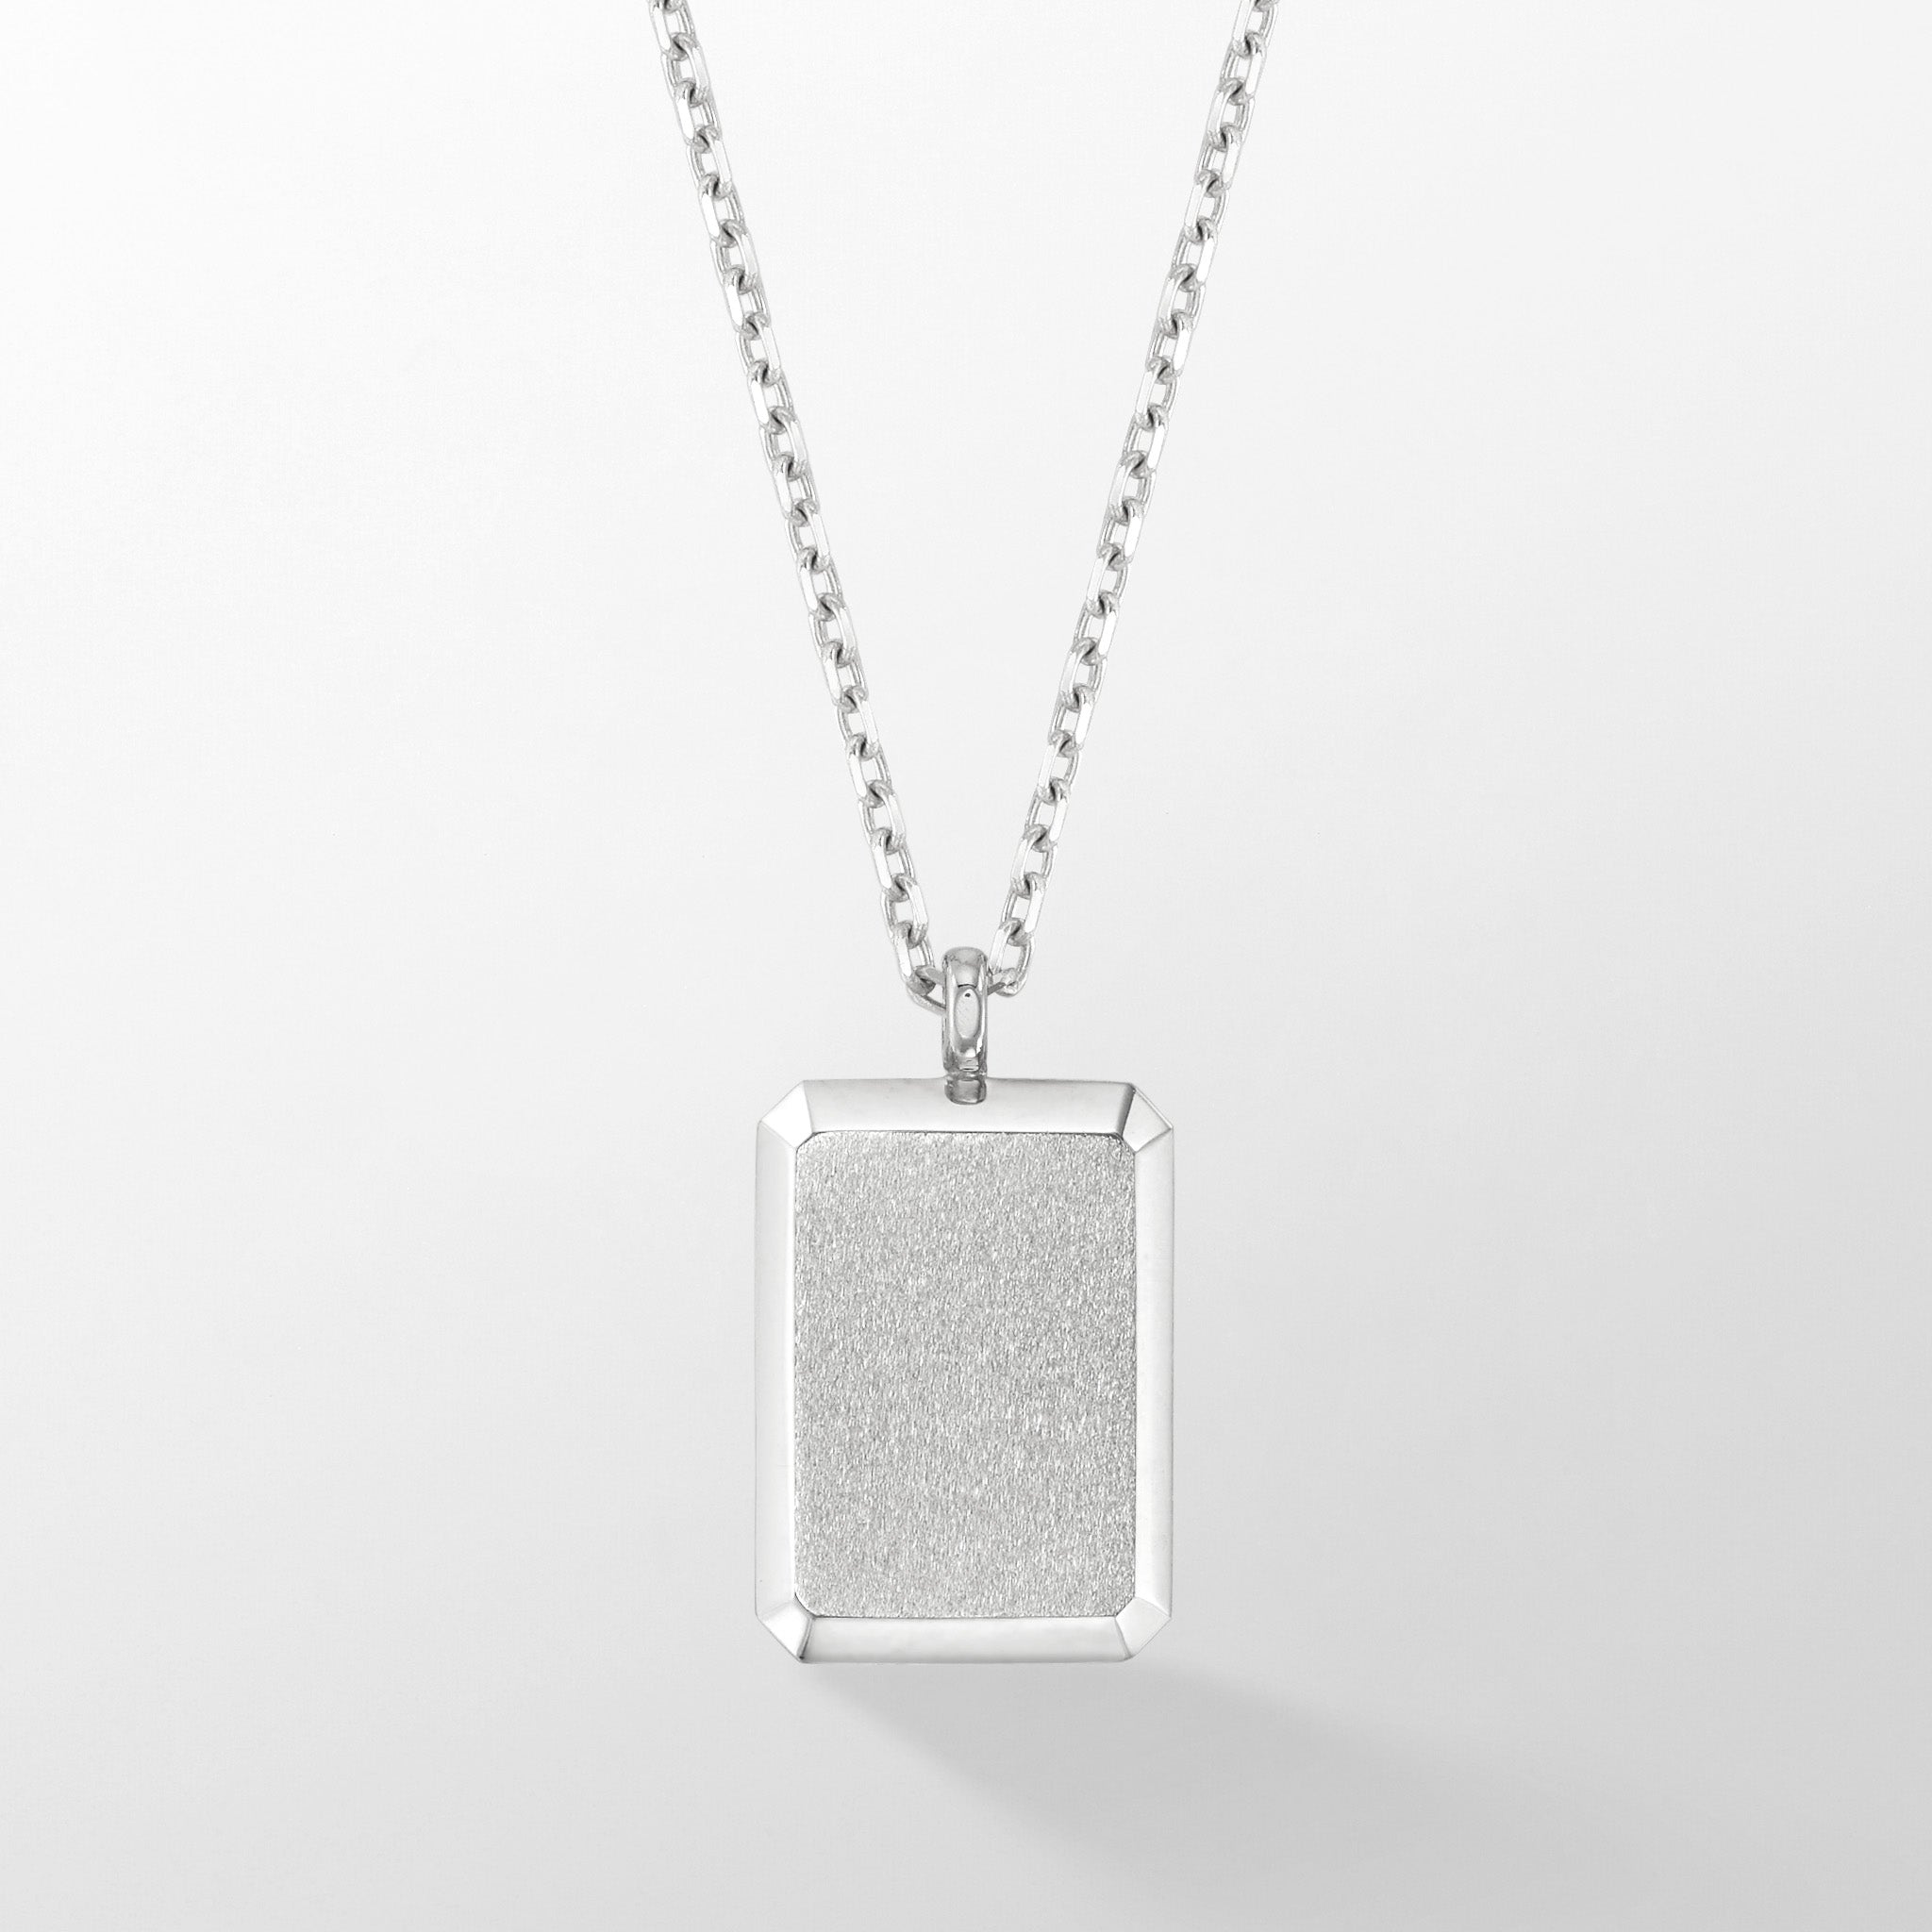 K14 ダイヤ ペンダントネックレス mado-pendant1 – 自分のジュエリー nokim